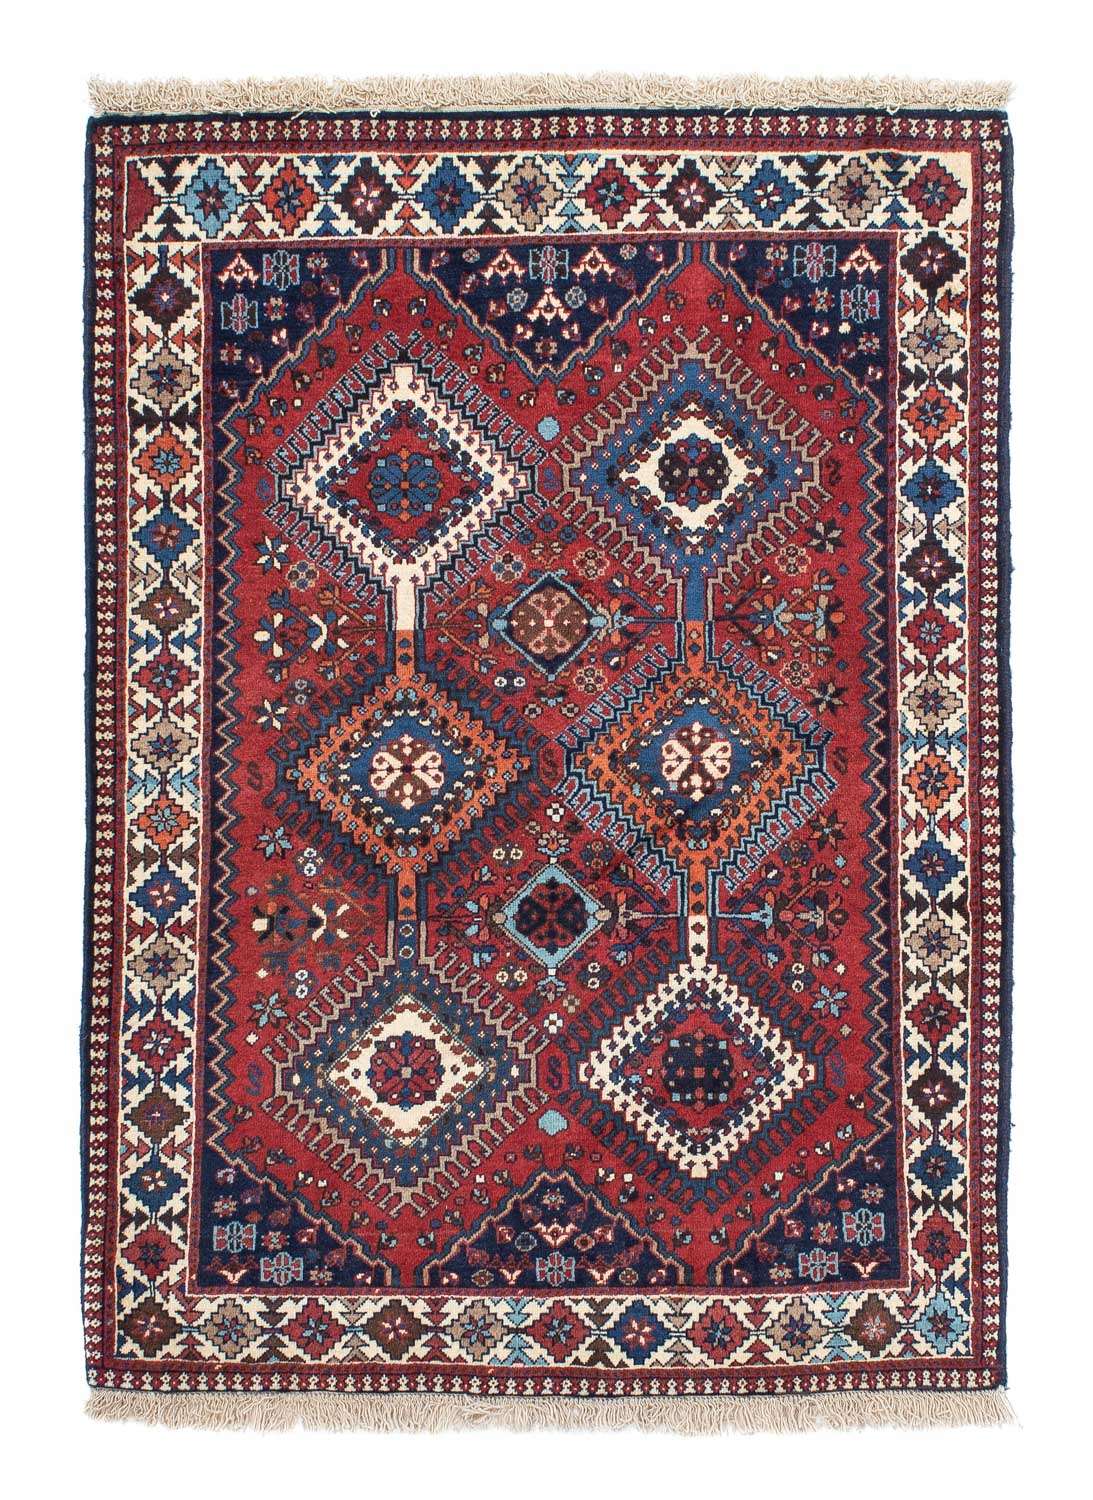 Perski dywan - Nomadyczny - 147 x 102 cm - czerwony